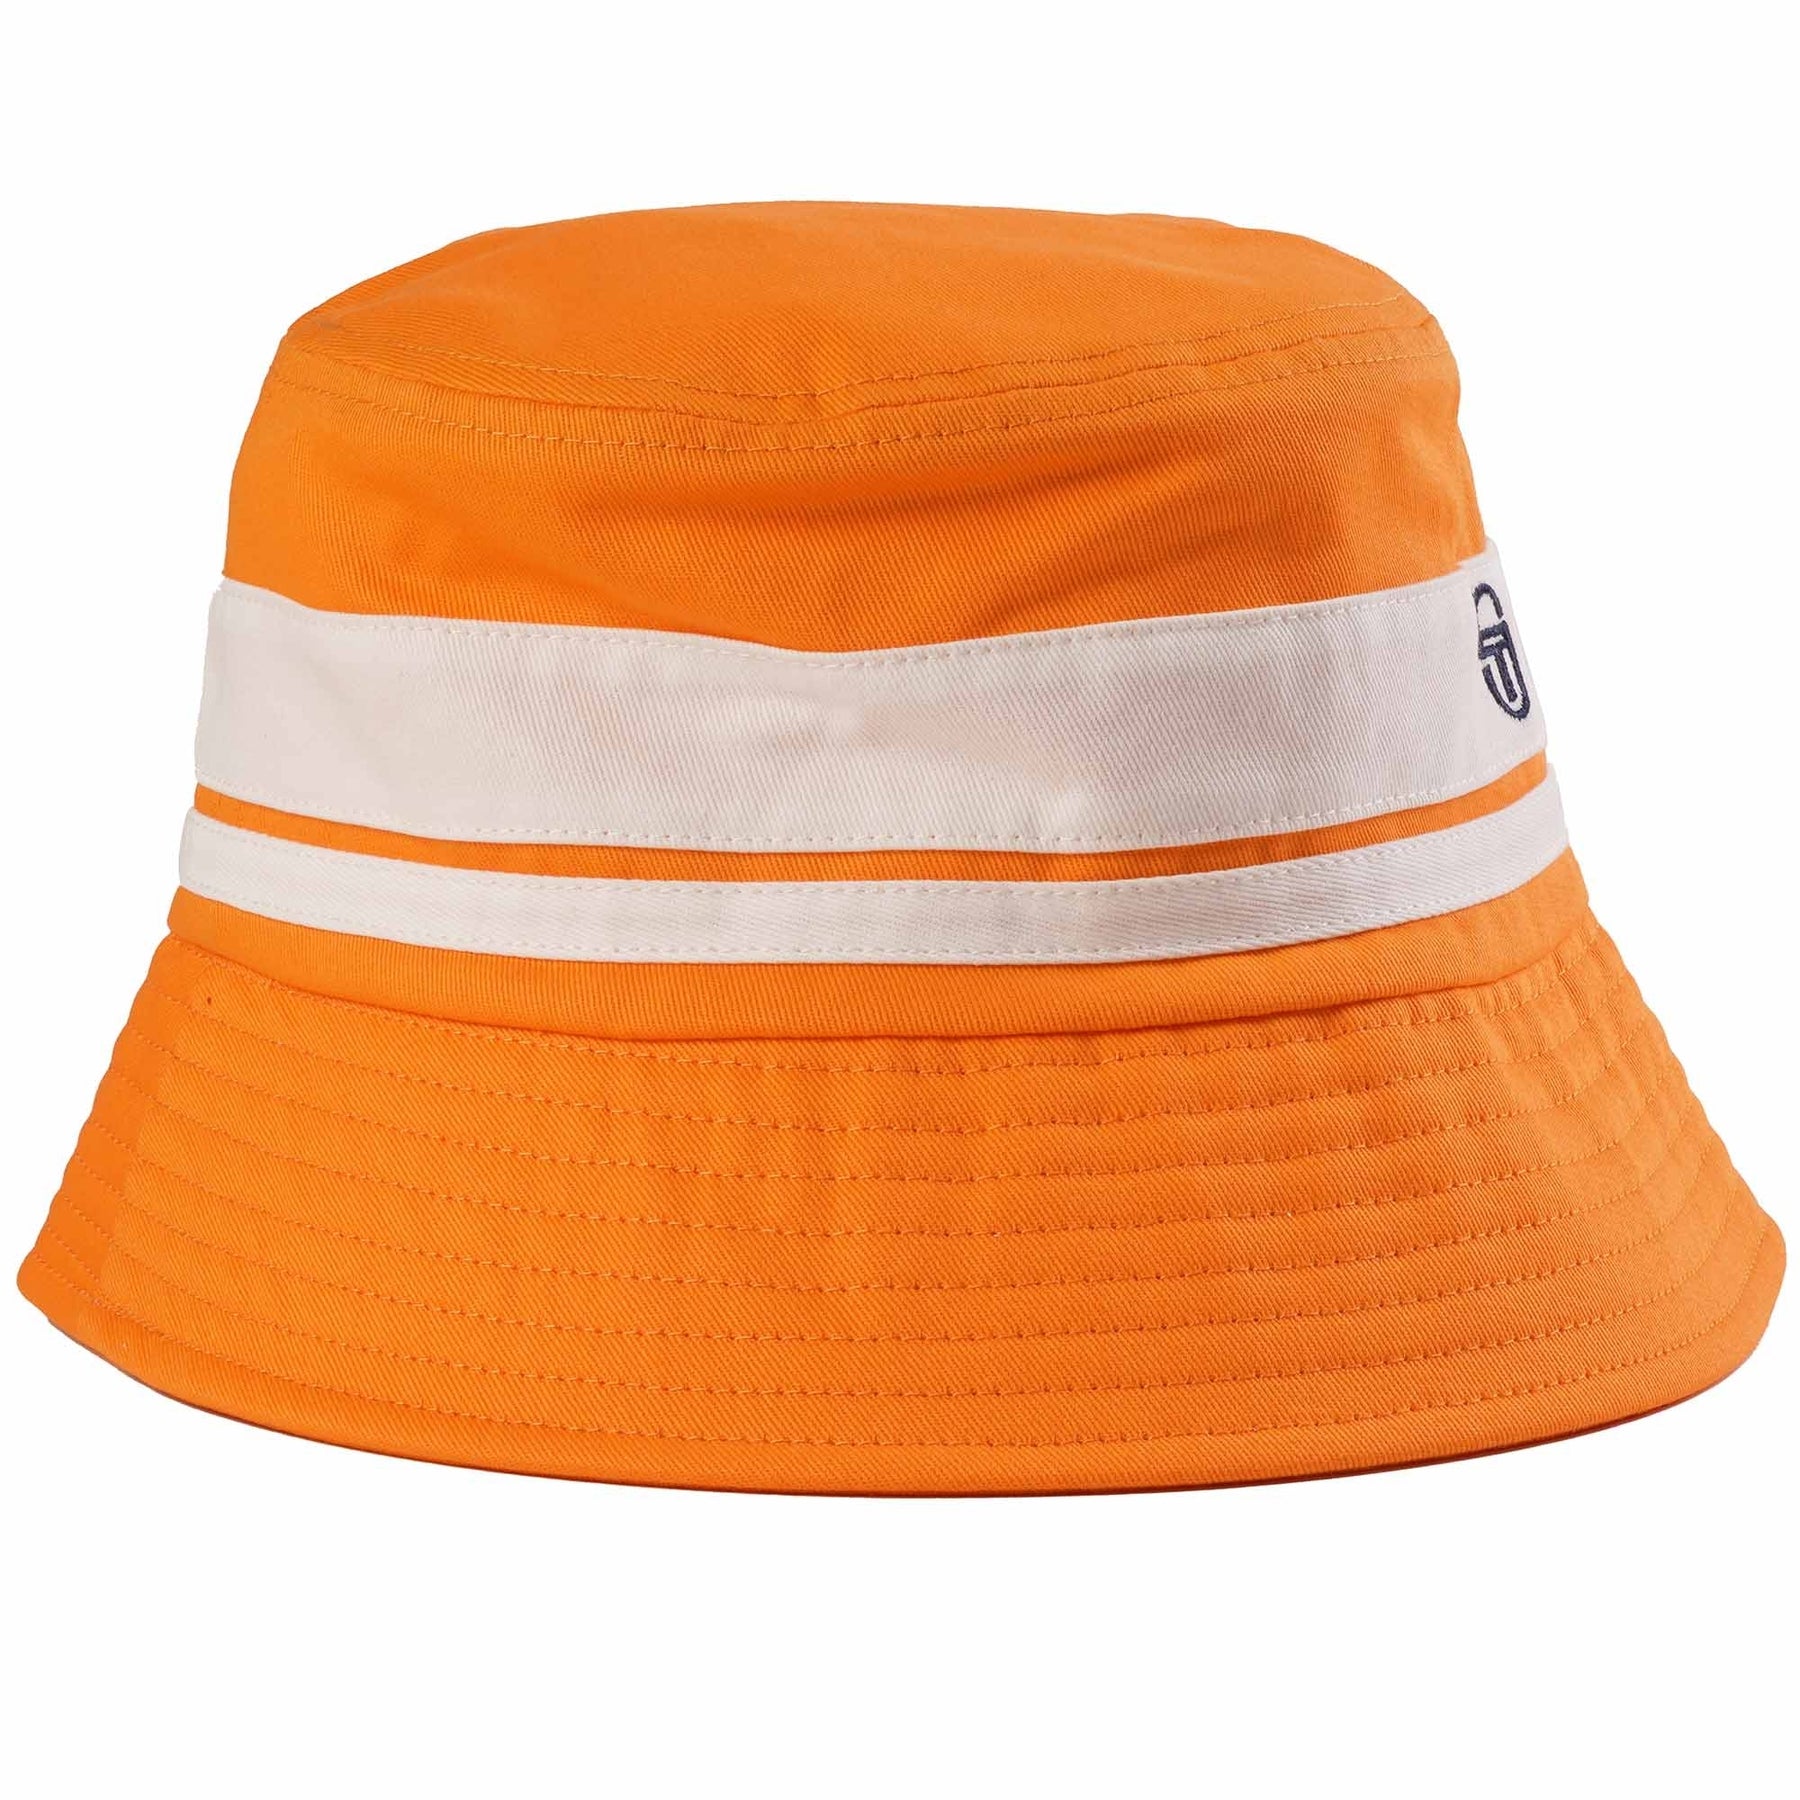 Sergio Tacchini Newsford Bucket Hat - Bright Orange - Men's – Urban ...